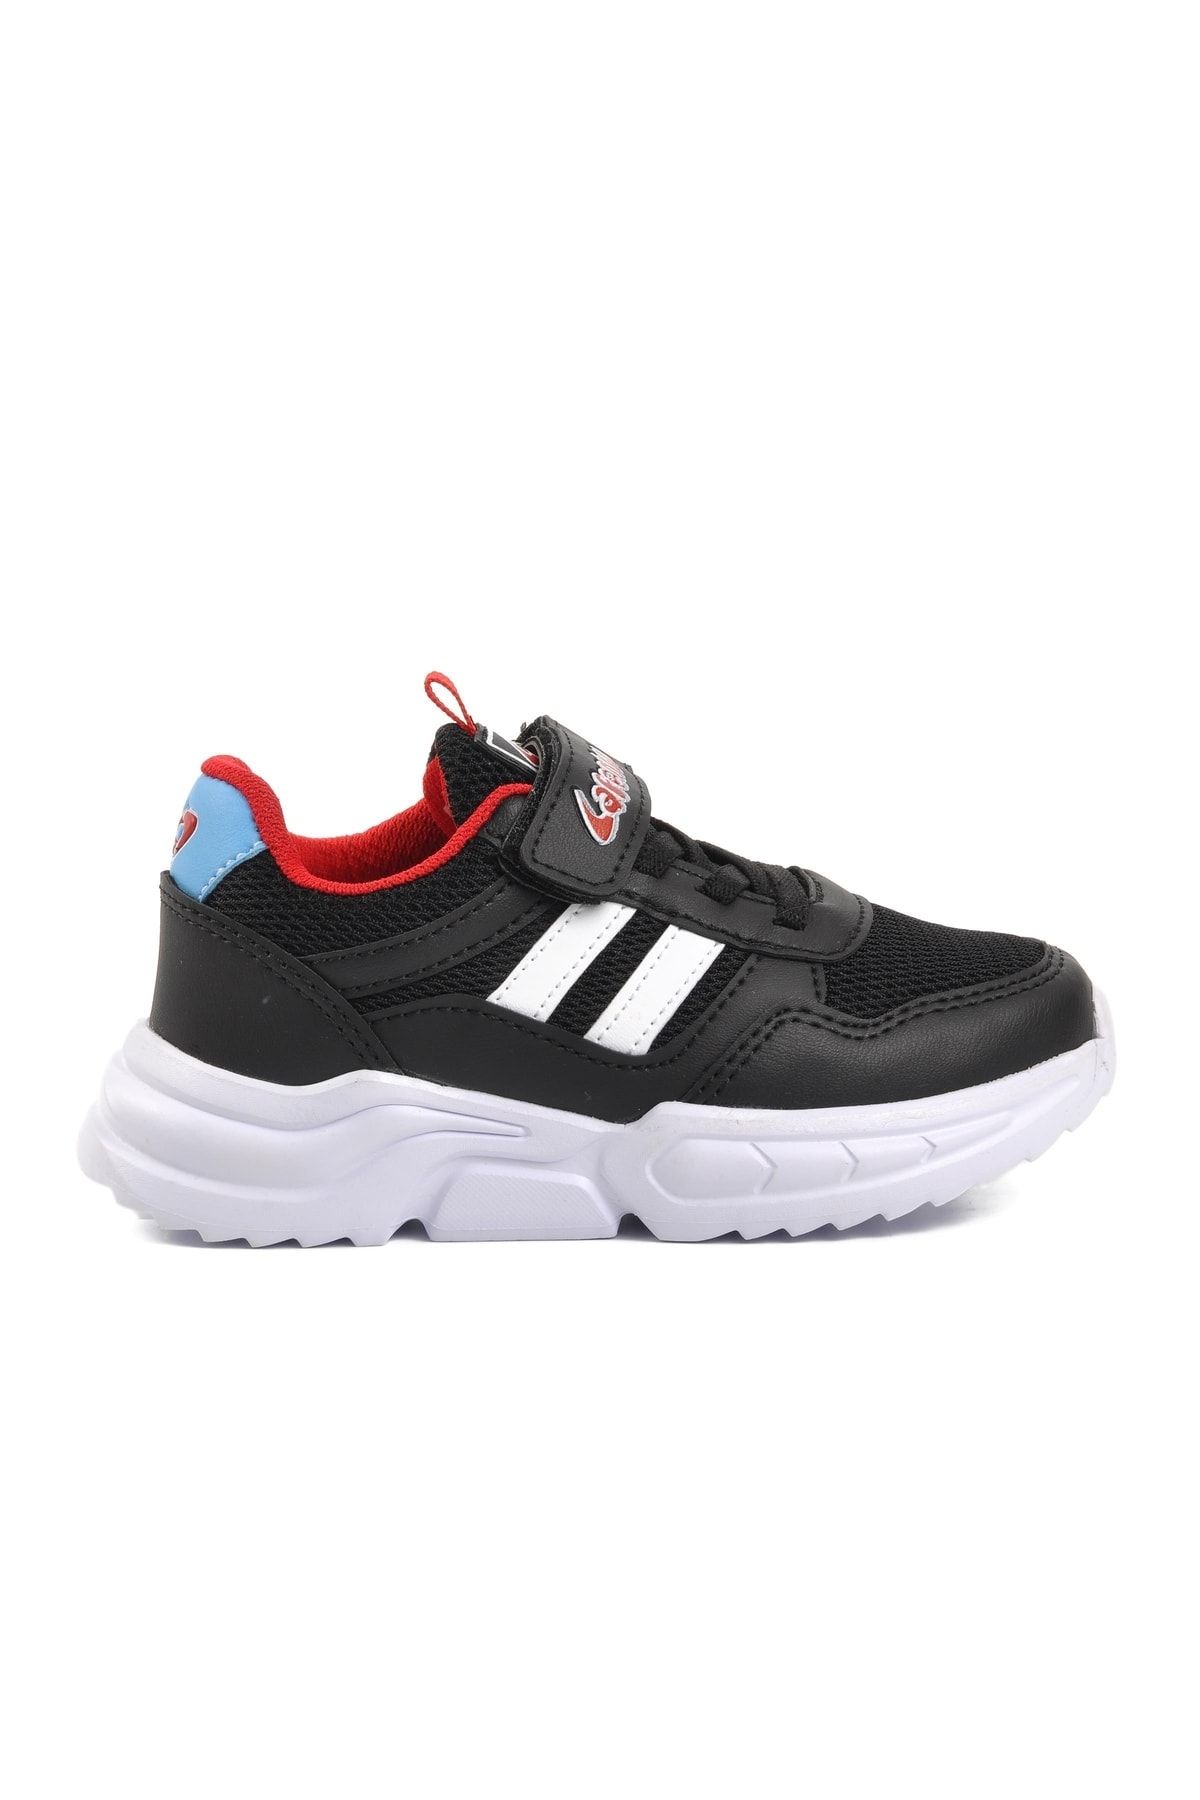 aspor Siyah-kırmızı Cırt Cırtlı Kız/erkek Çocuk Spor Ayakkabı